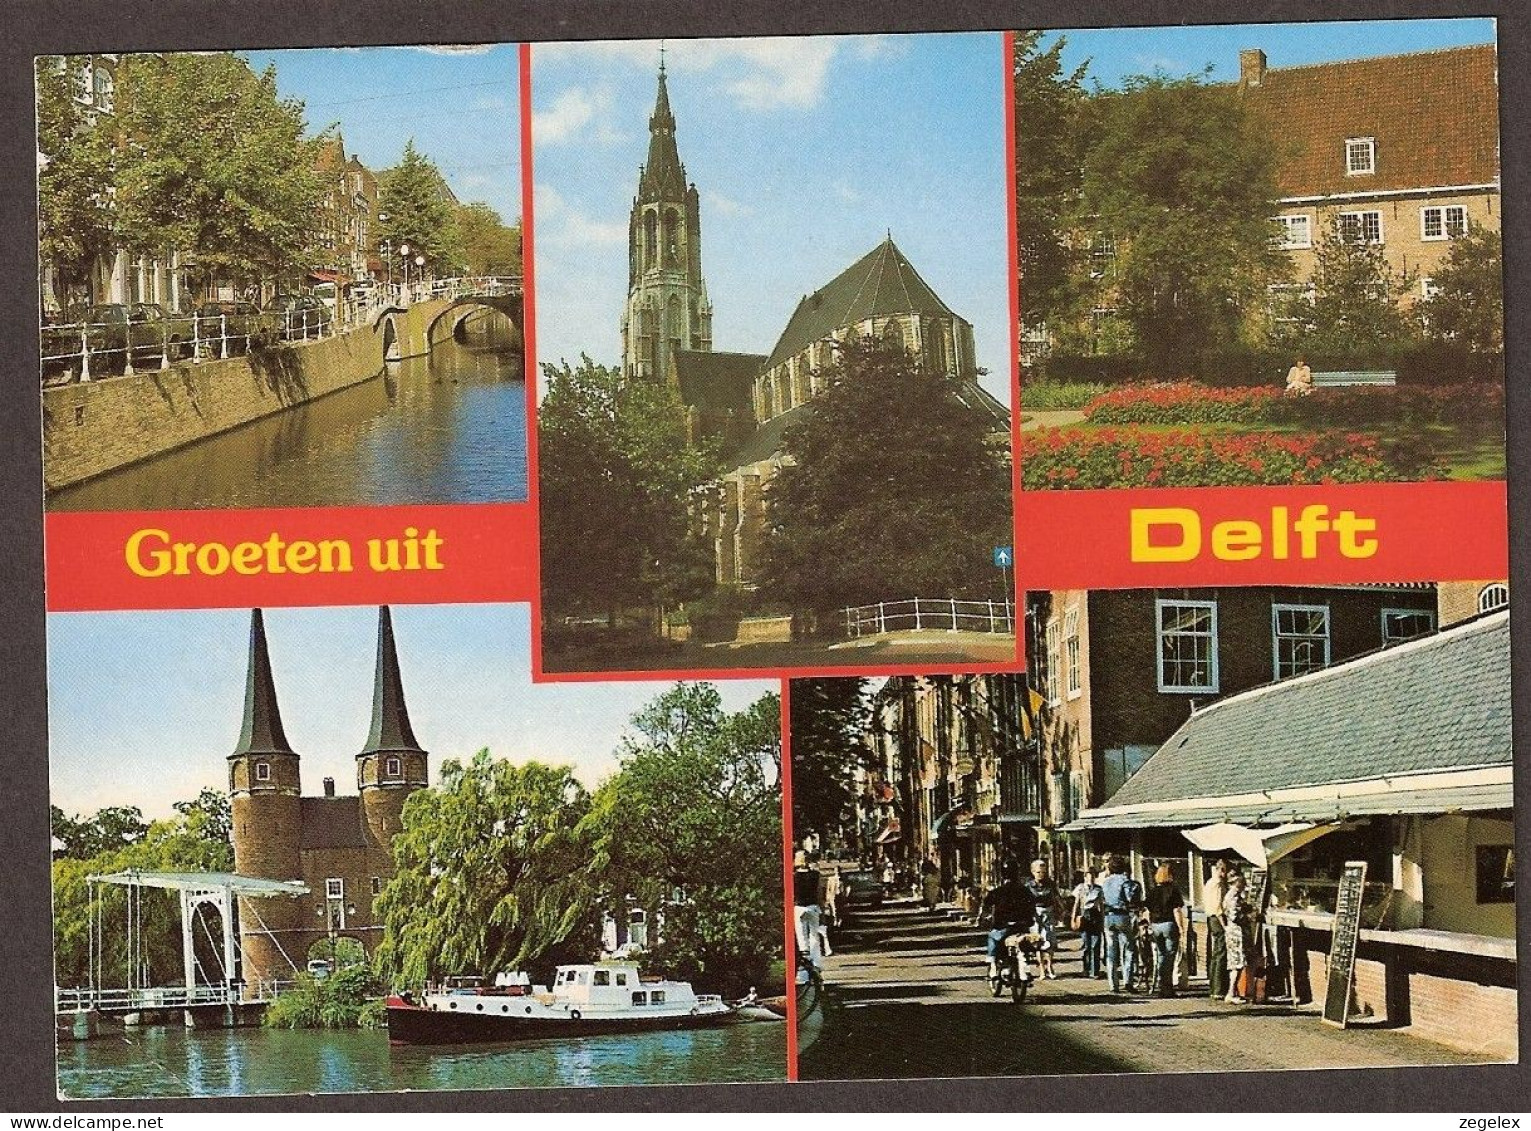 Delft - Delft